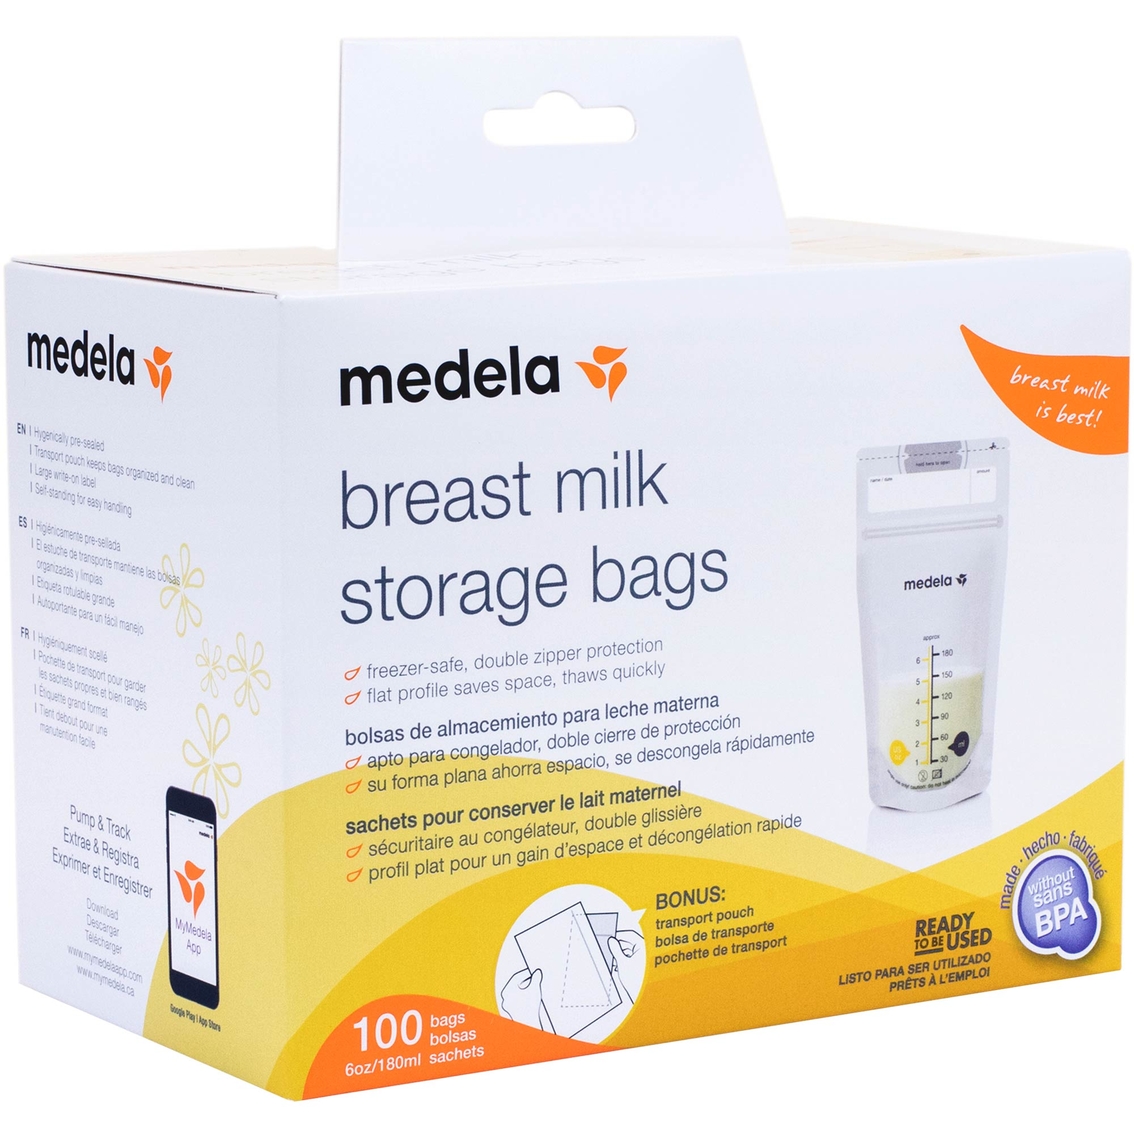 Medela Breast Milk Storage Bags 100 Ct. - Image 1 of 3